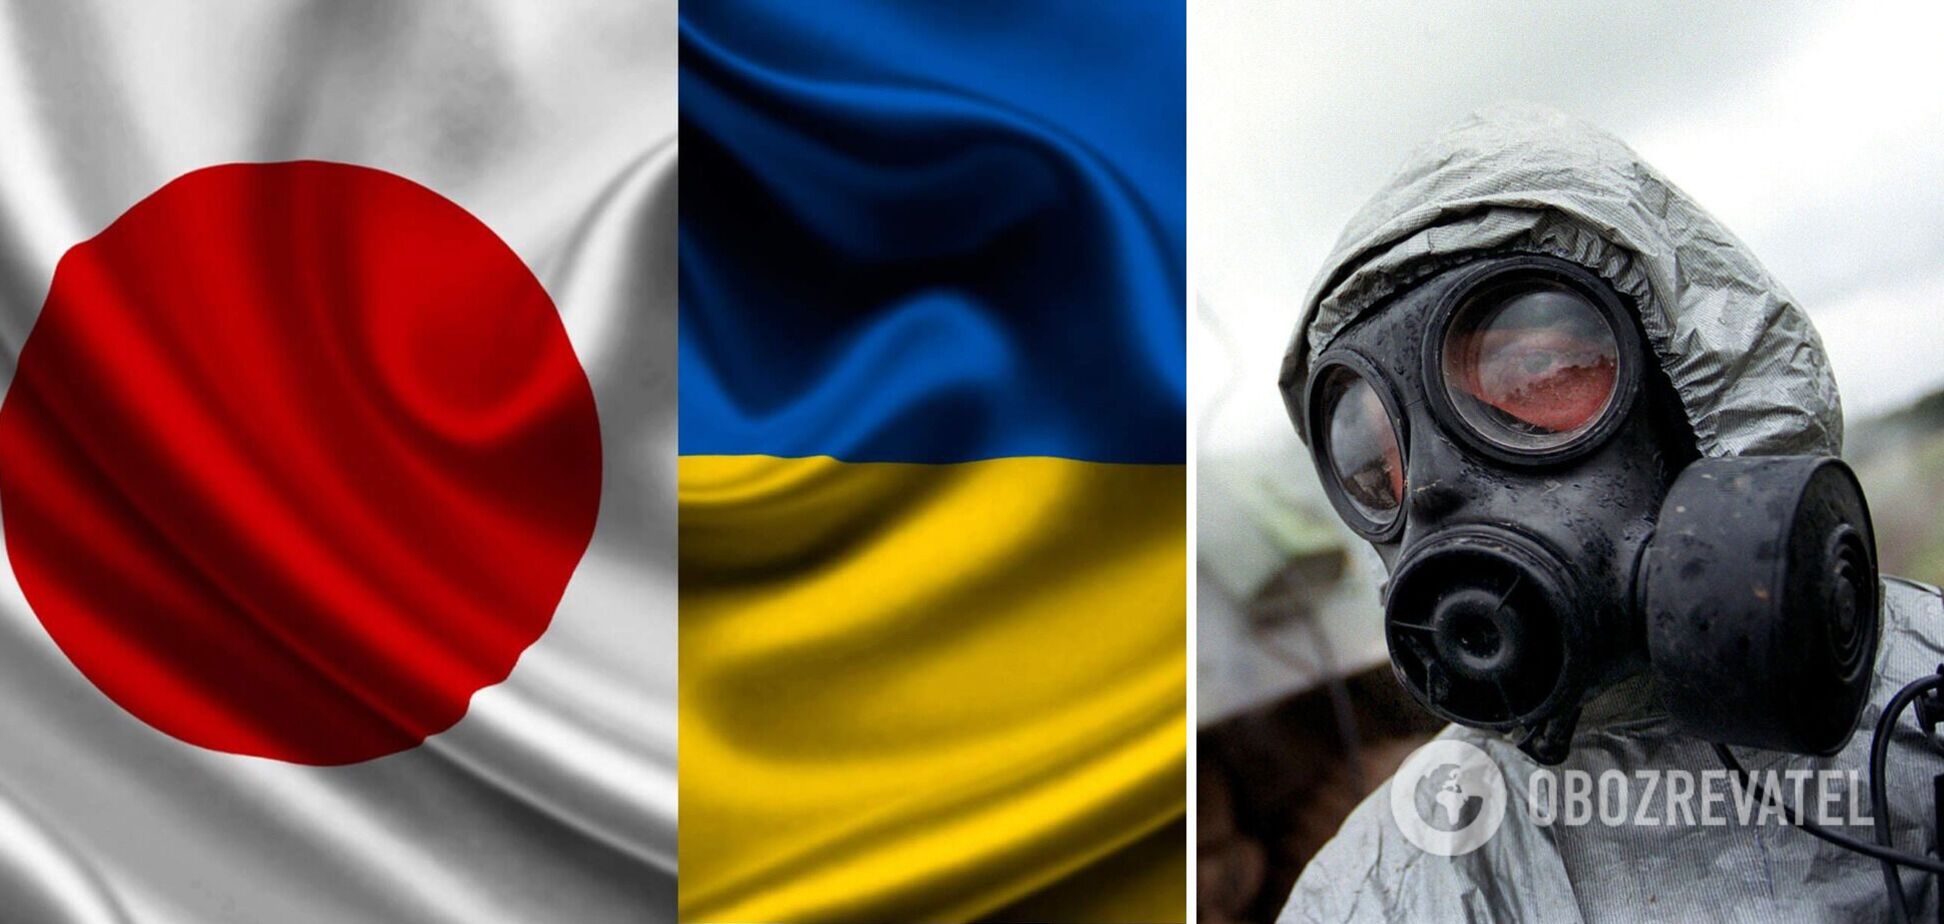 Опасения растут: Япония заявила о передаче Украине дронов и средств химзащиты